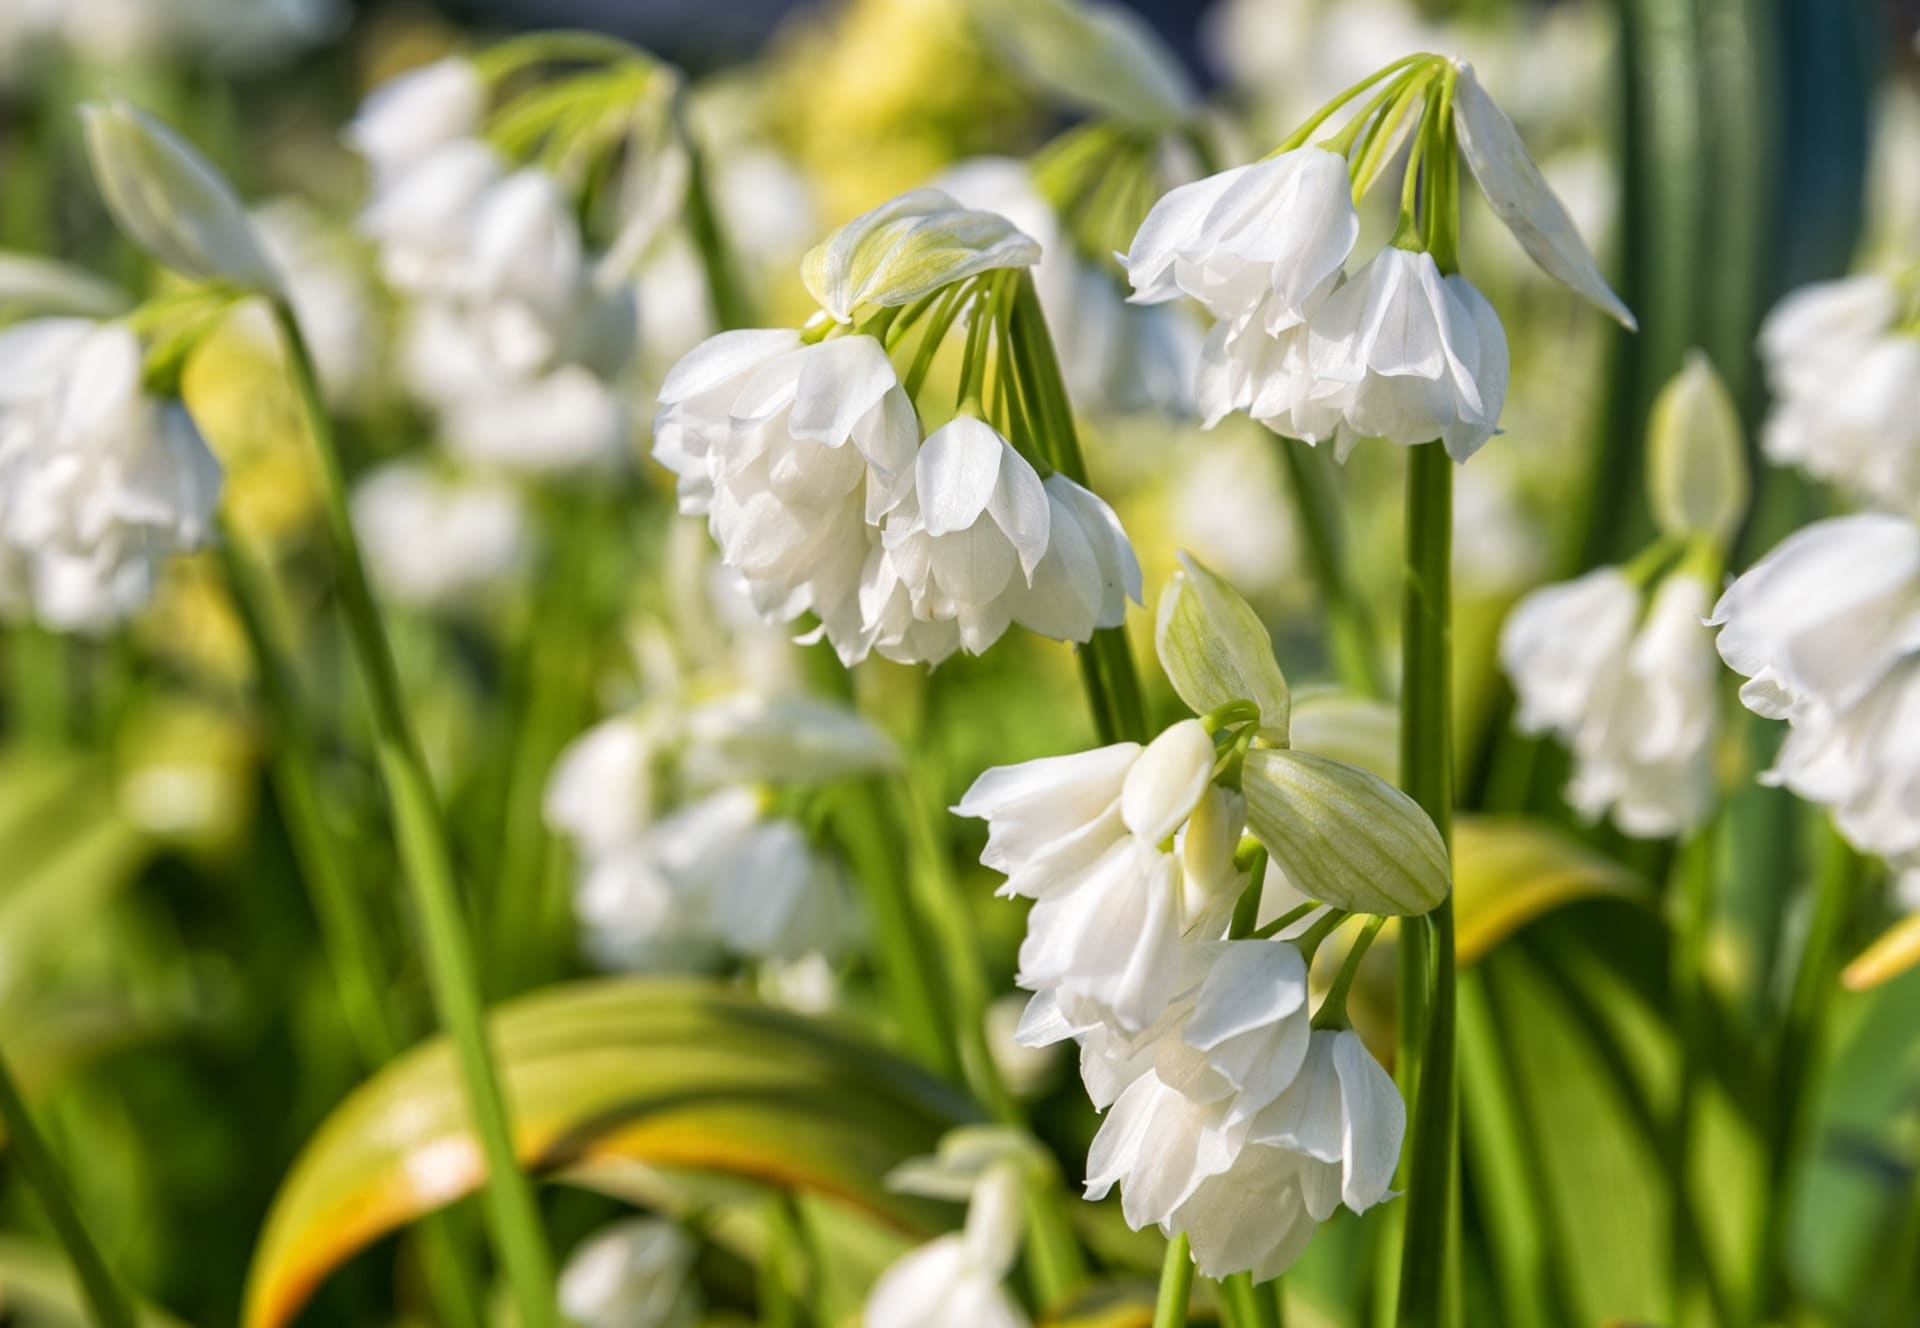 Květy česneku podivného jsou zvonkovité, v bílé až krémové barvě, s krátkými tyčinkami. Varieta Allium normale.